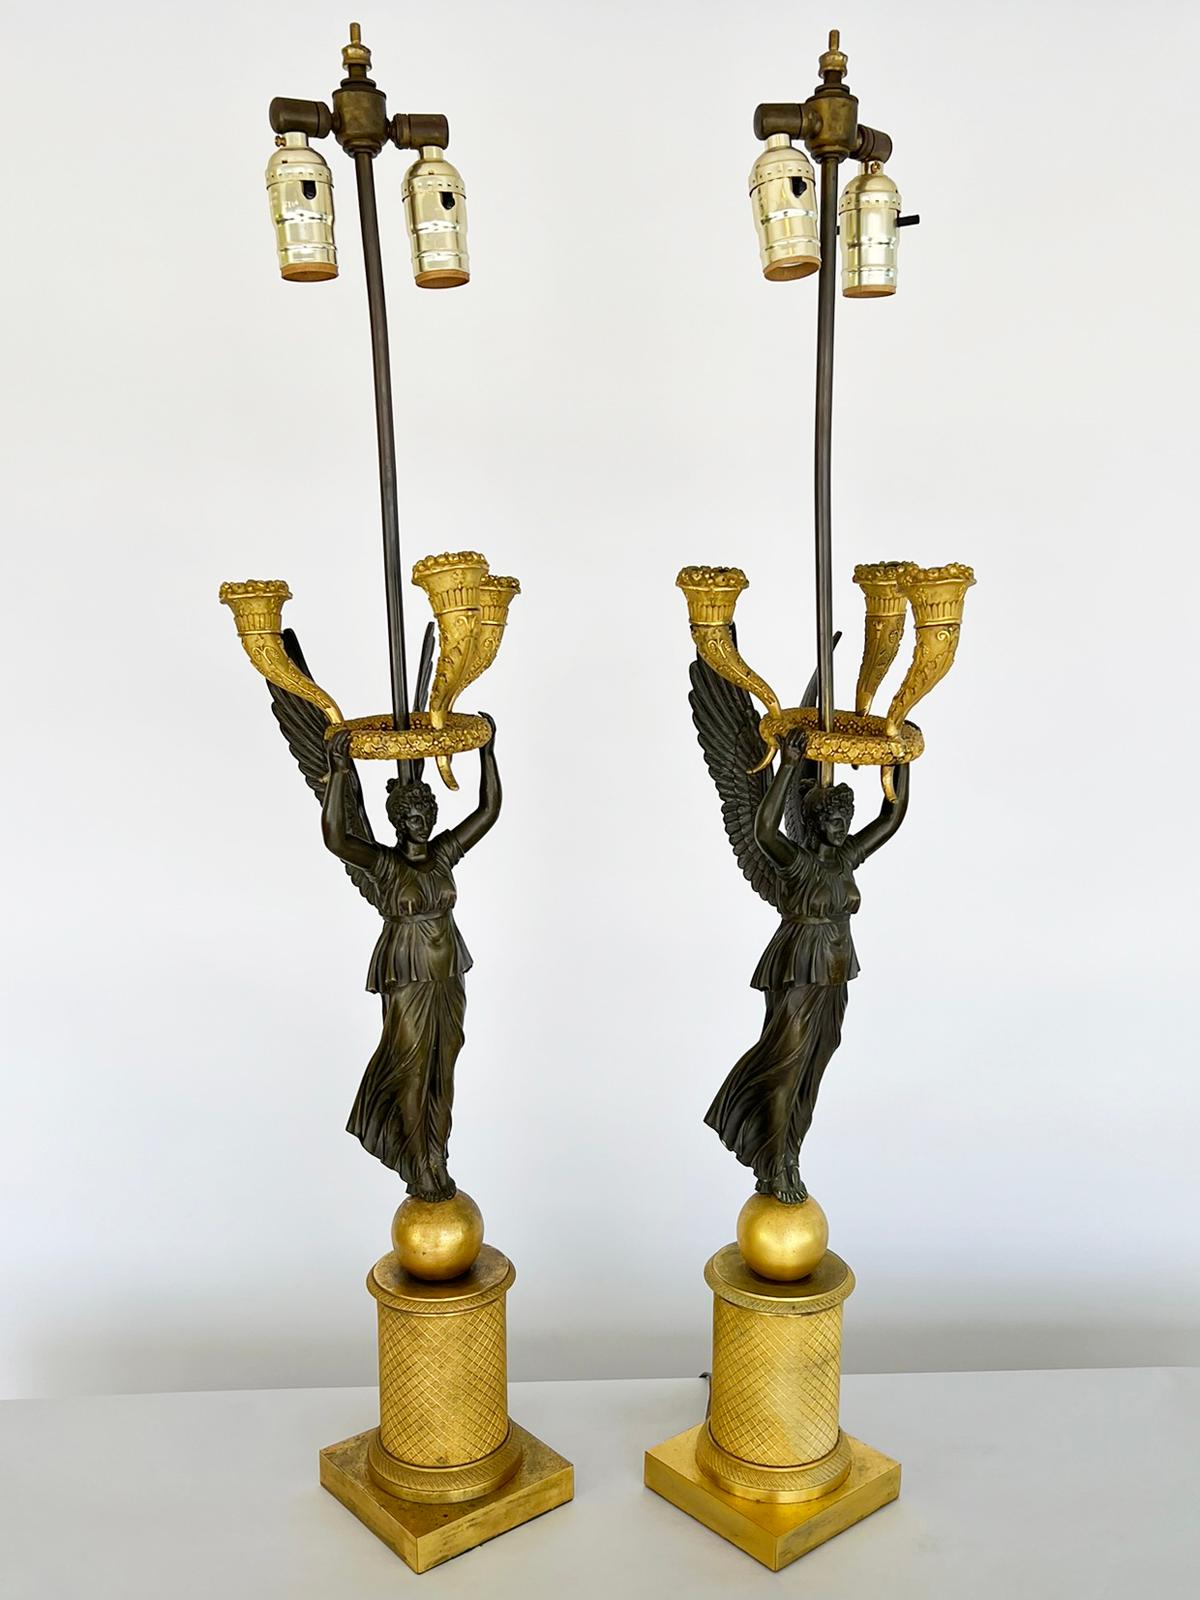 Paire de candélabres figurés d'époque Empire. Chacune d'elles représente une figure ailée de la Victoire, en bronze breveté, avec les deux bras soutenant une couronne de fleurs, et trois cornes d'abondance, en bronze doré. Chaque cariatide repose